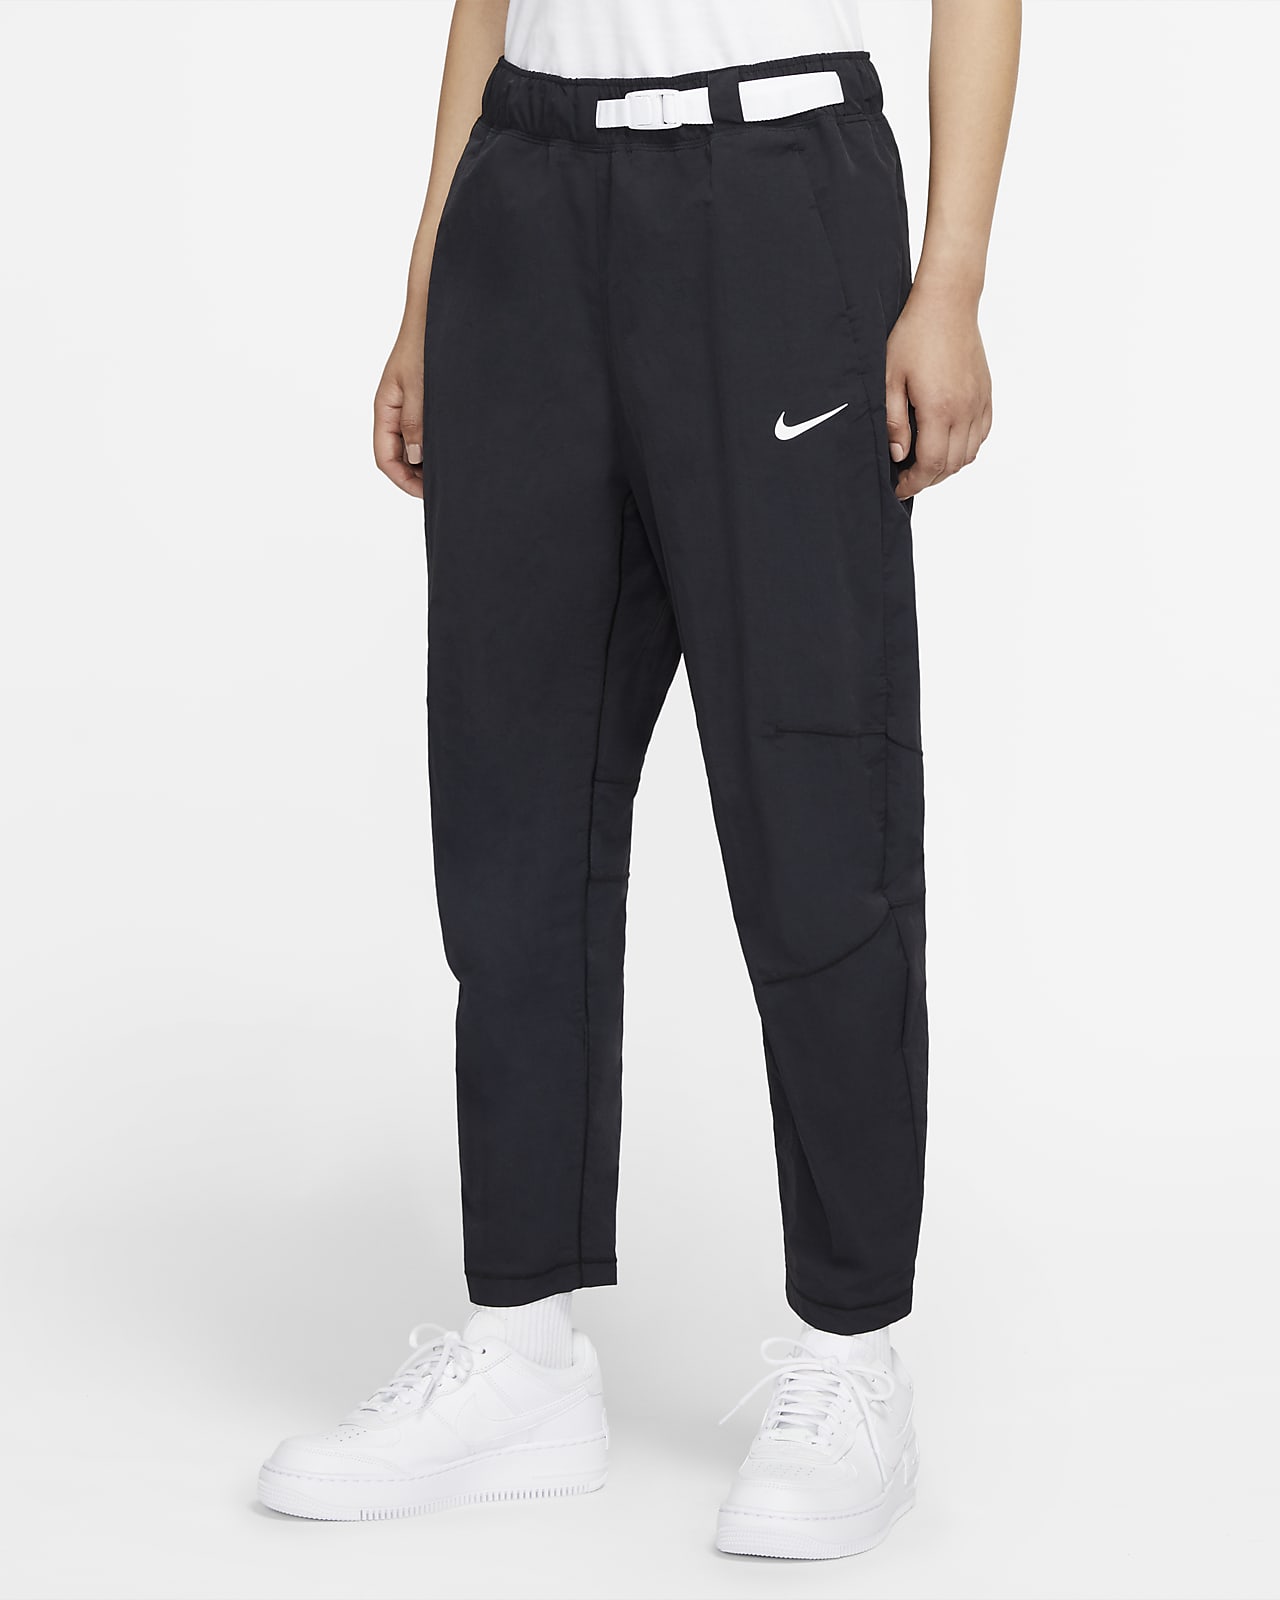 Nike Sportswear Pack Women's Woven Pants. Nike